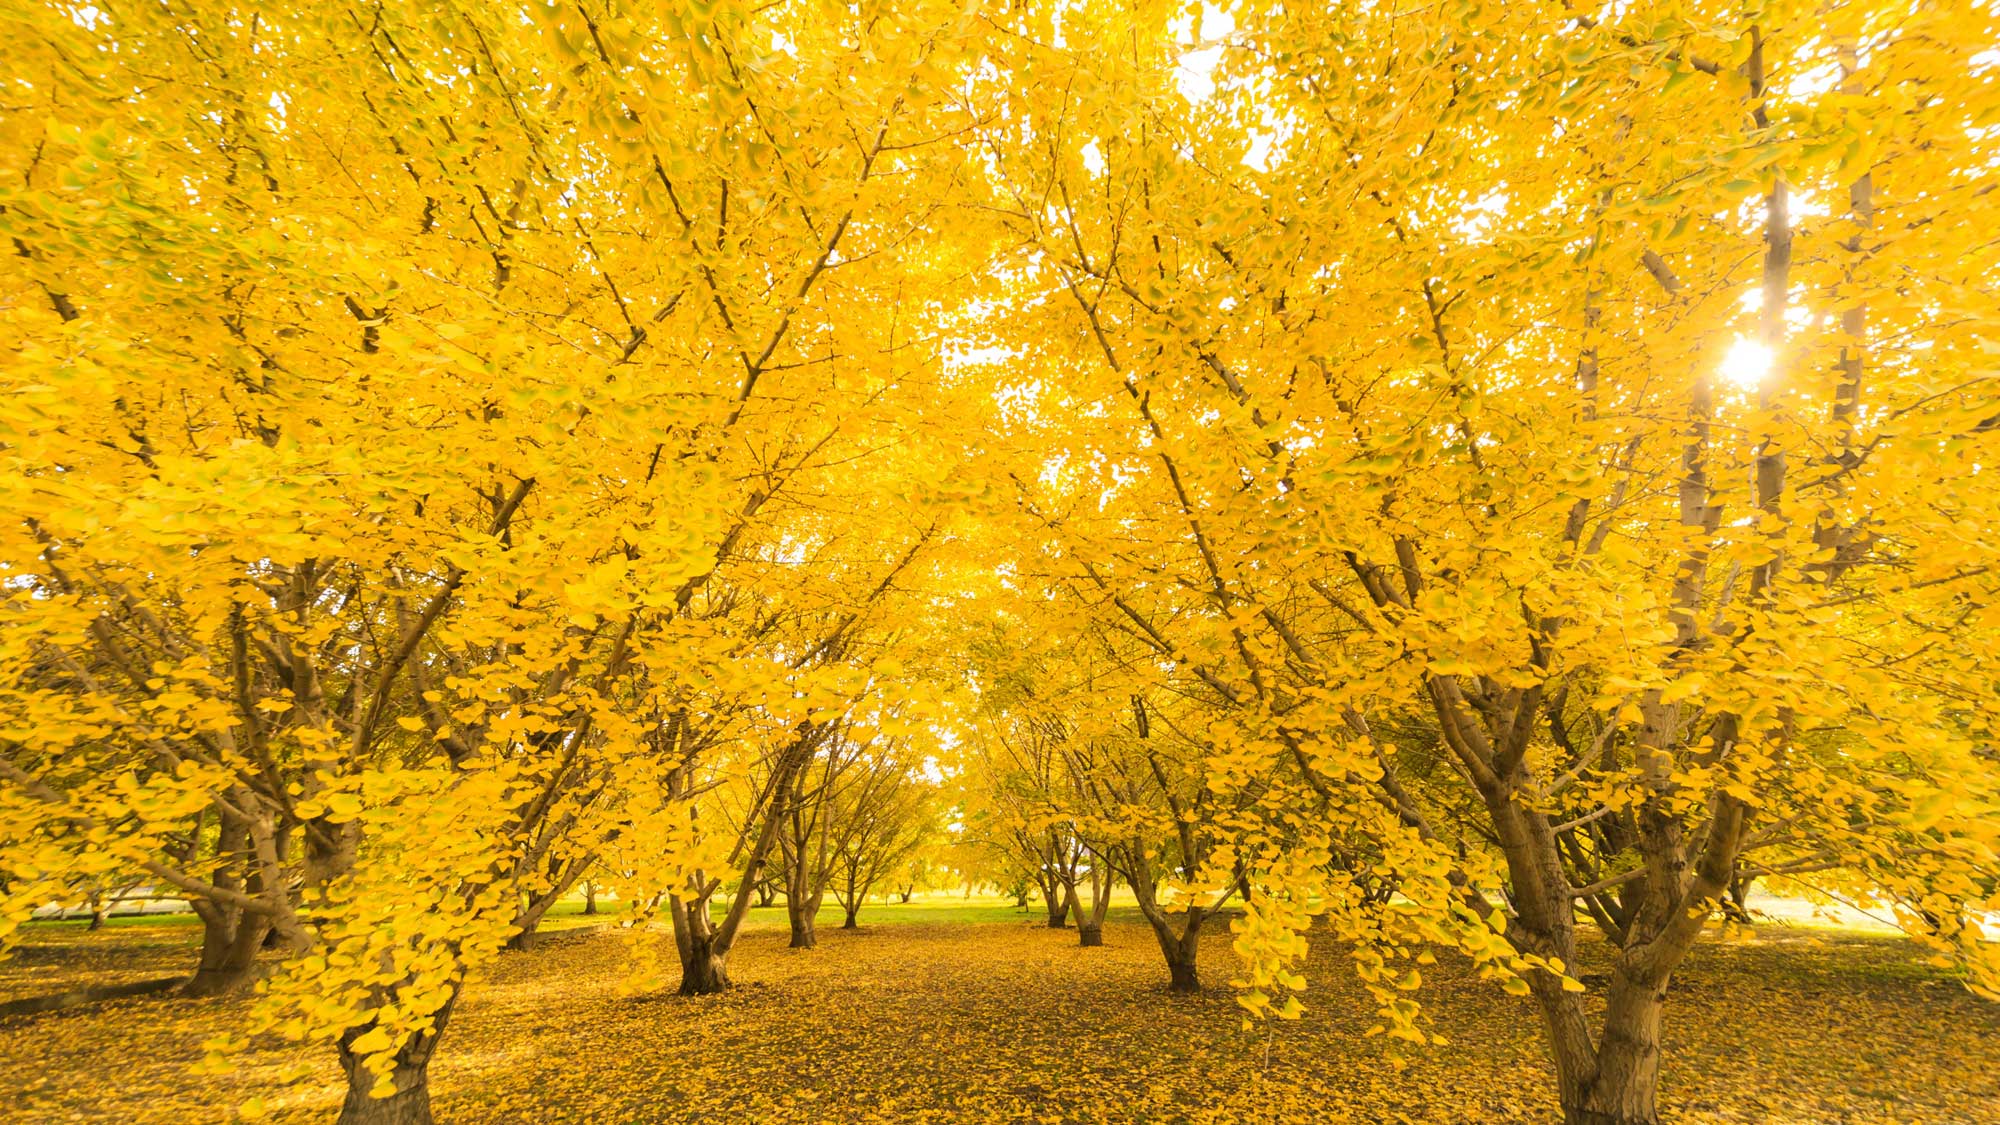 【周辺観光】11月中旬から下旬にかけてが見頃。八女を代表する秋の銀杏の木をぜひご覧ください。